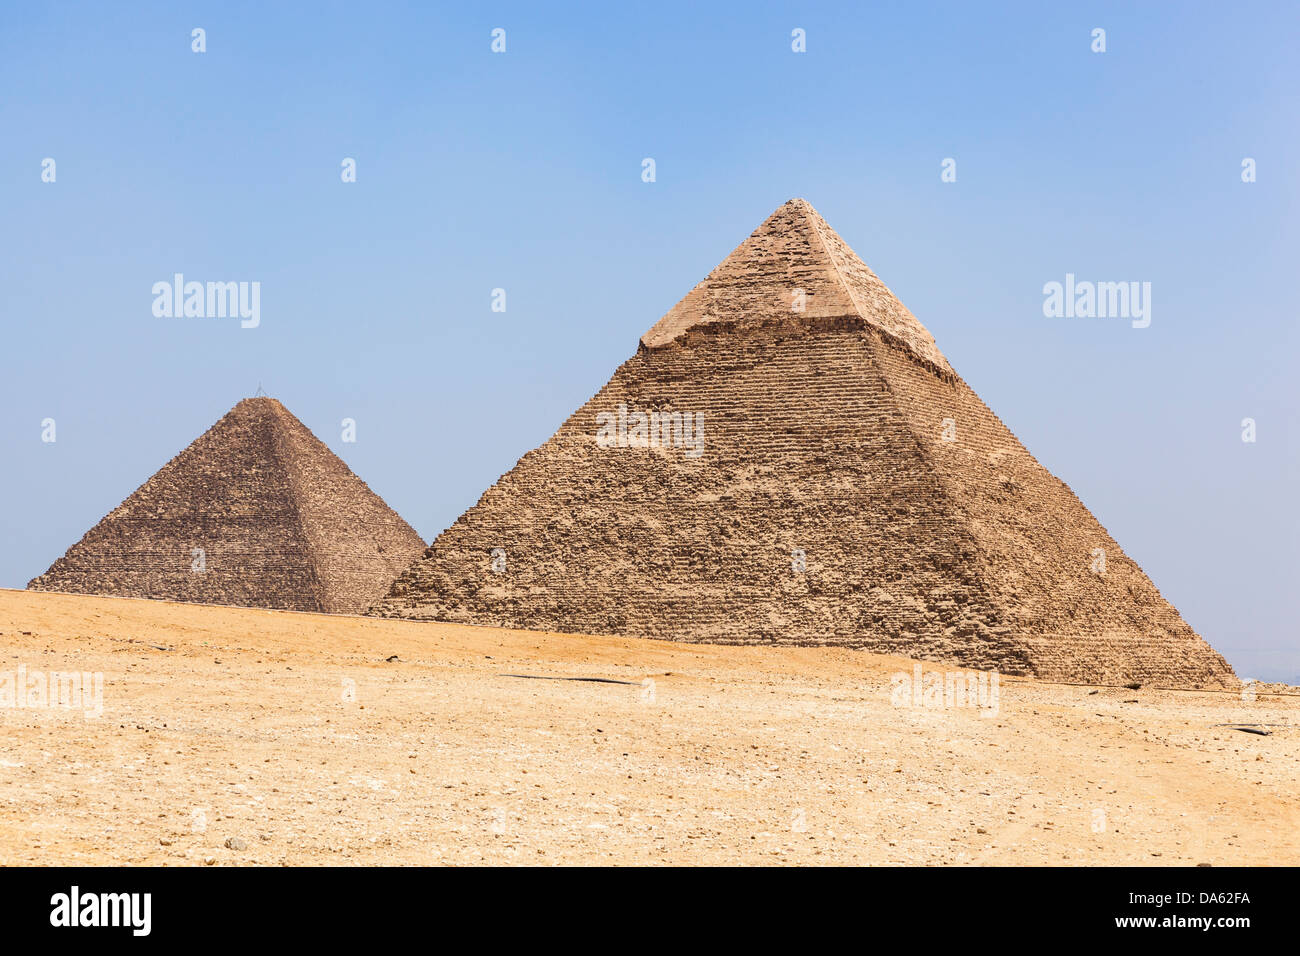 Grande pyramide de Gizeh (pyramide de Chéops et Cheops), et Pyramide de Khafré (pyramide de Khéphren), Giza, Le Caire, Egypte Banque D'Images